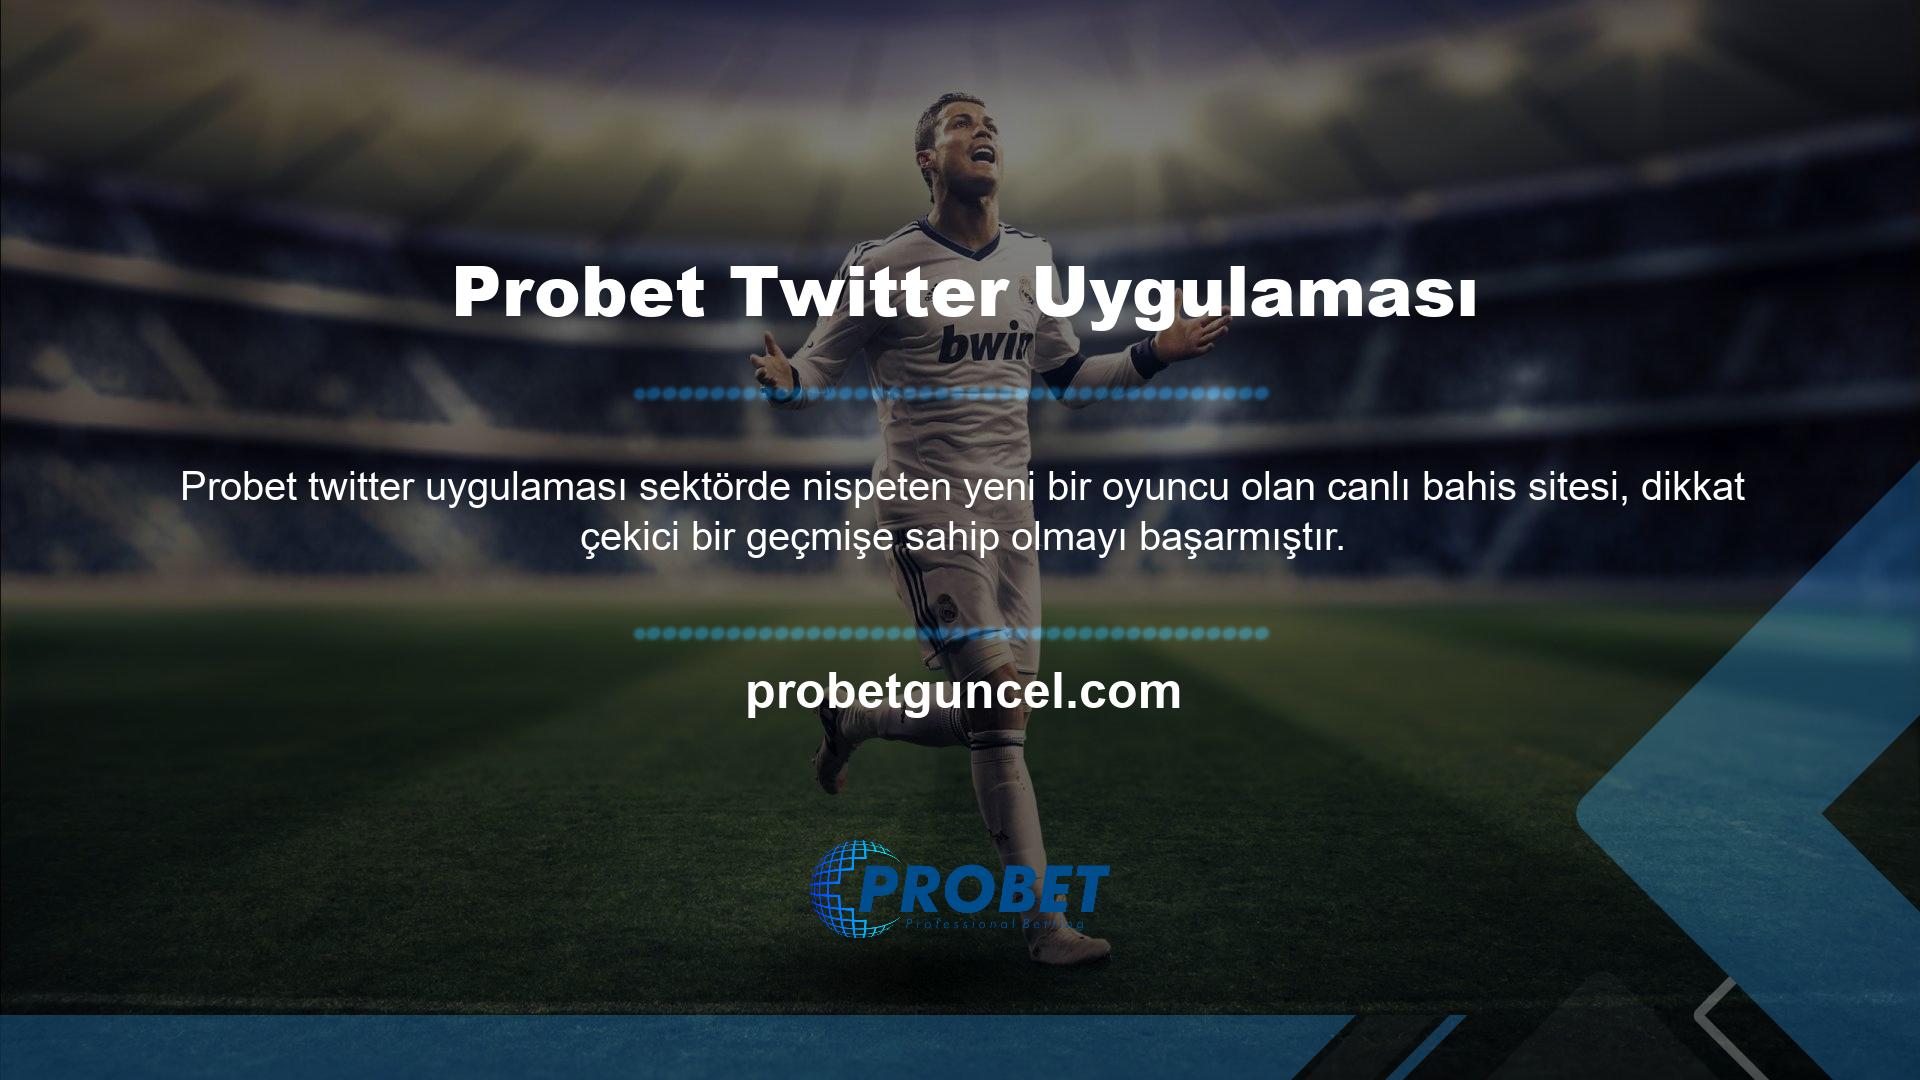 Probet Twitter uygulaması, gerçek zamanlı bahis platformlarından veri elde ettiği için eleştiriliyor